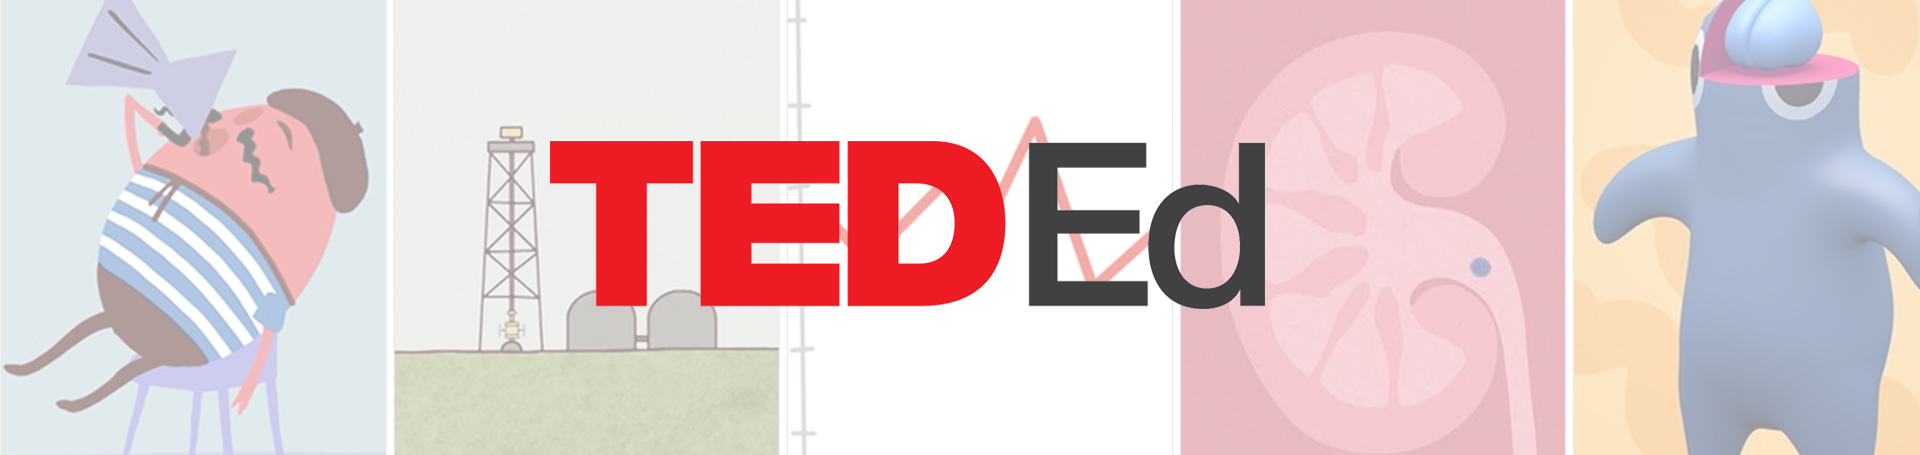 Aulas sem fronteiras: como usar o TED Ed para enriquecer seu conteúdo educativo